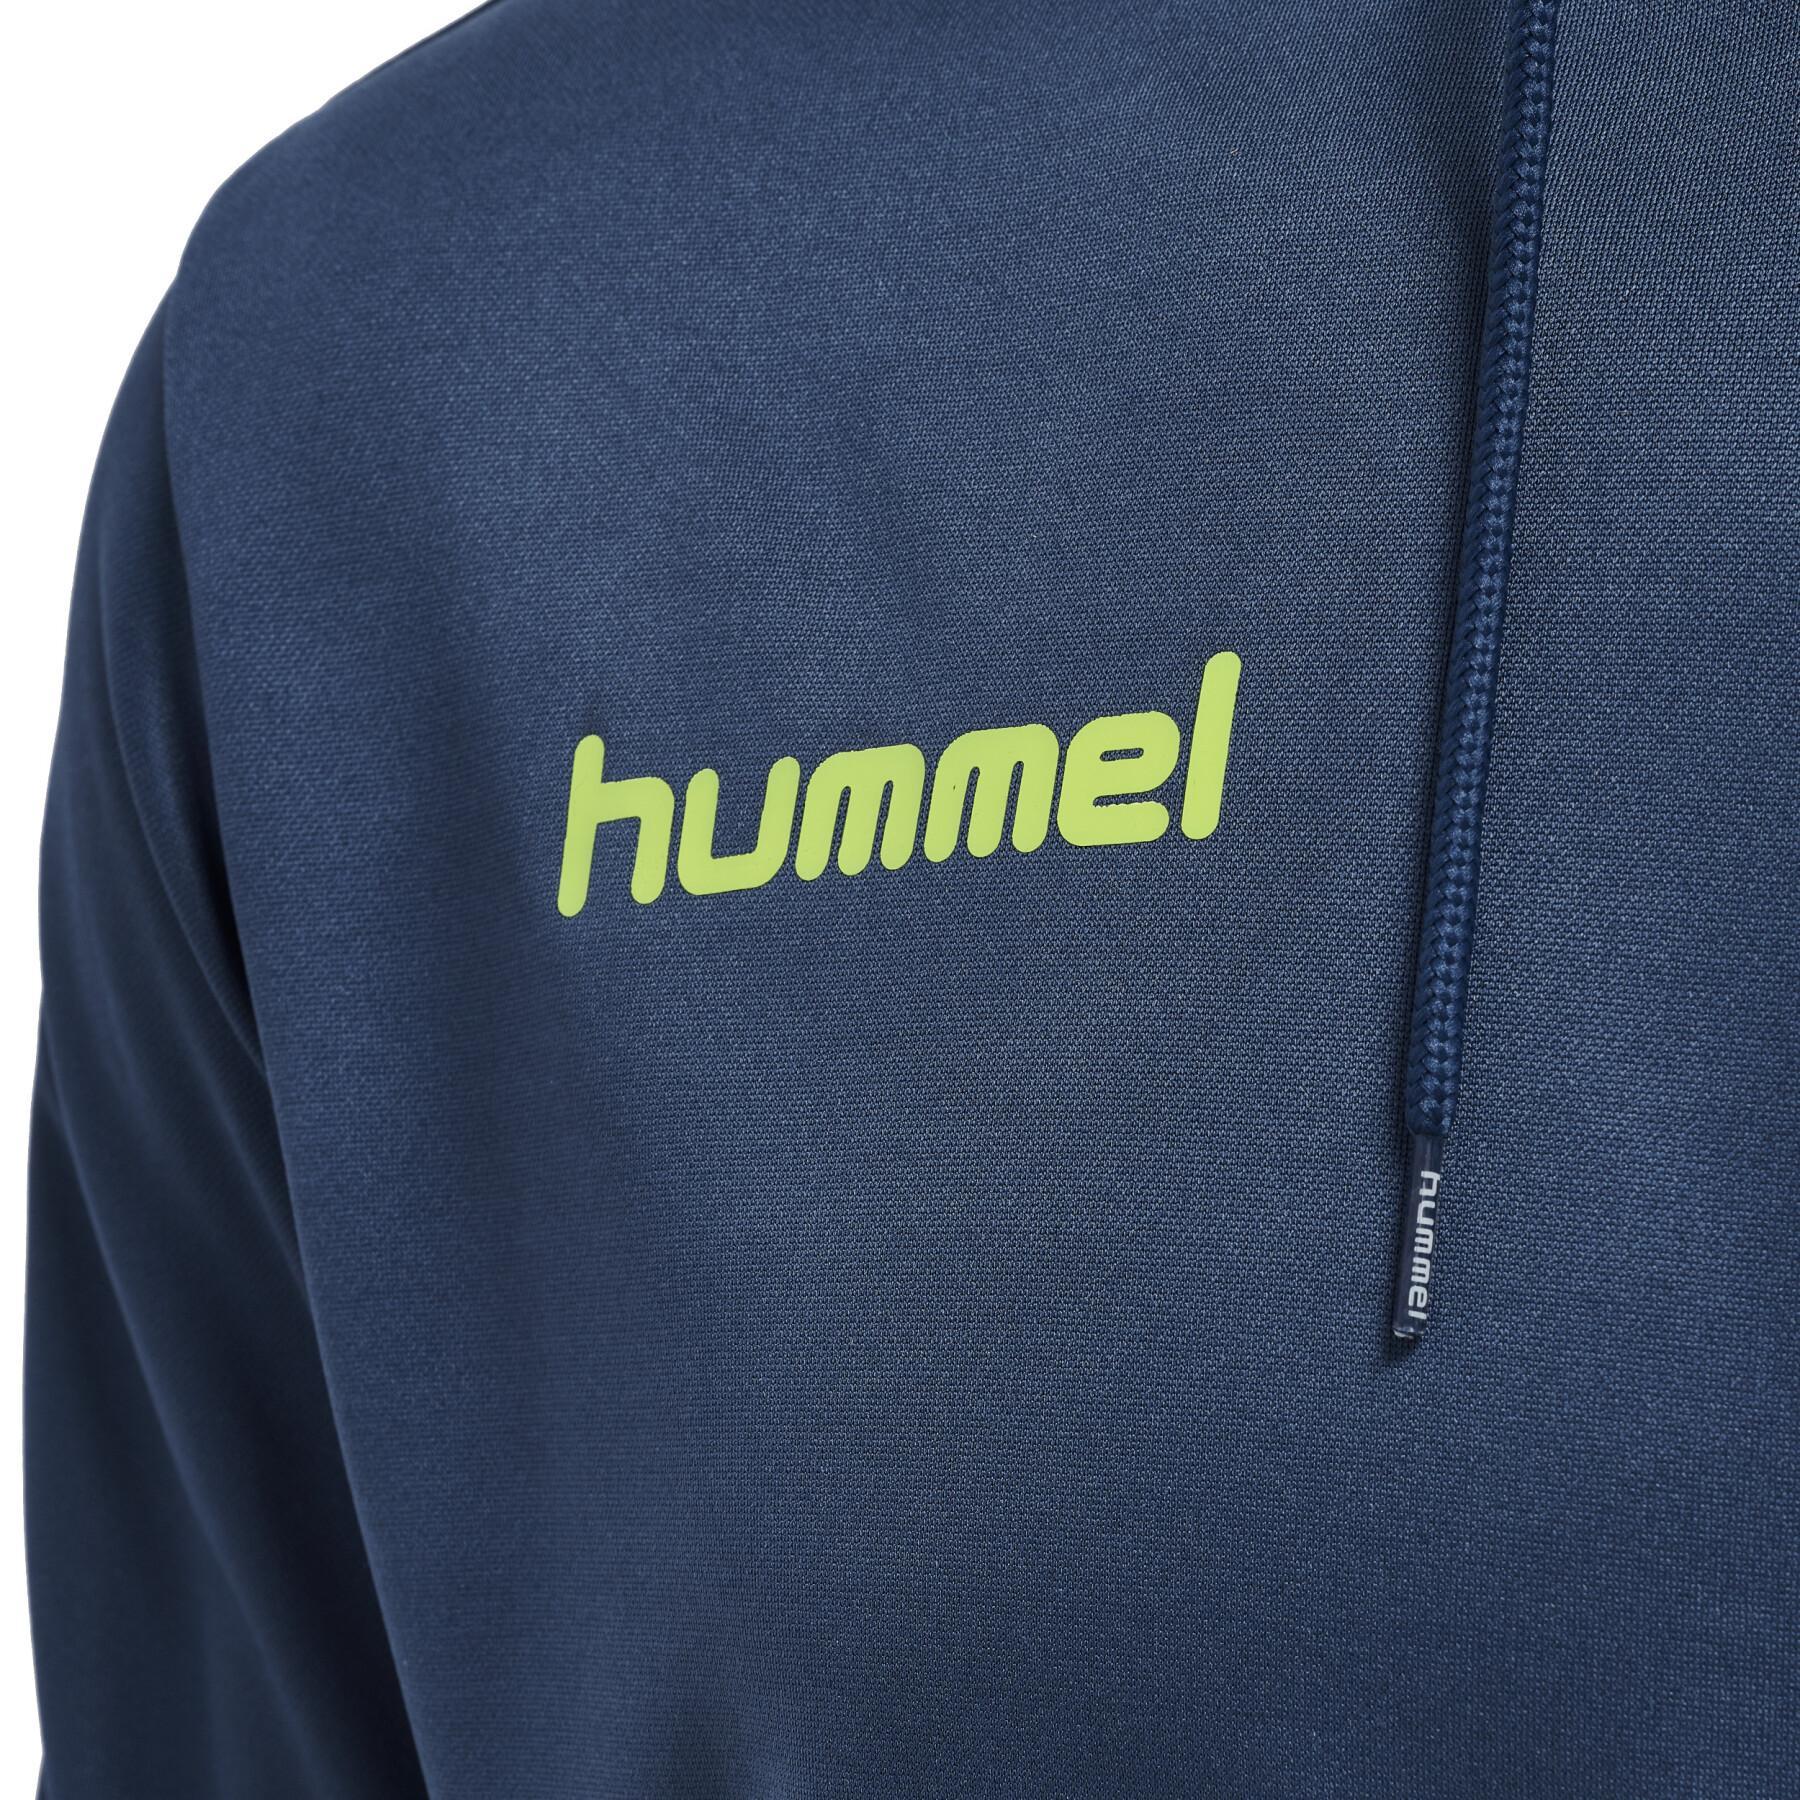 Sportswear - Hoodies - & Hooded Hummel Sweats - sweatshirt Promo Sweats Hummel